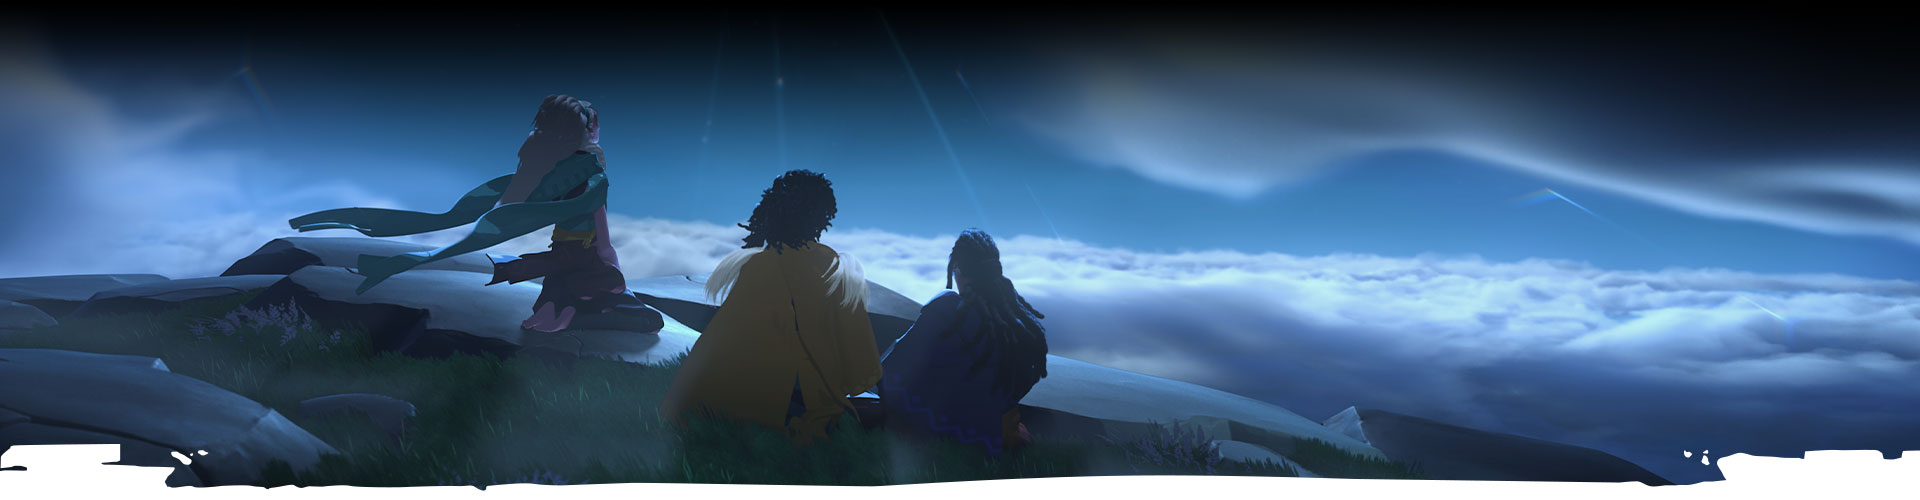 Trzy postacie spoglądają na nocne niebo. 